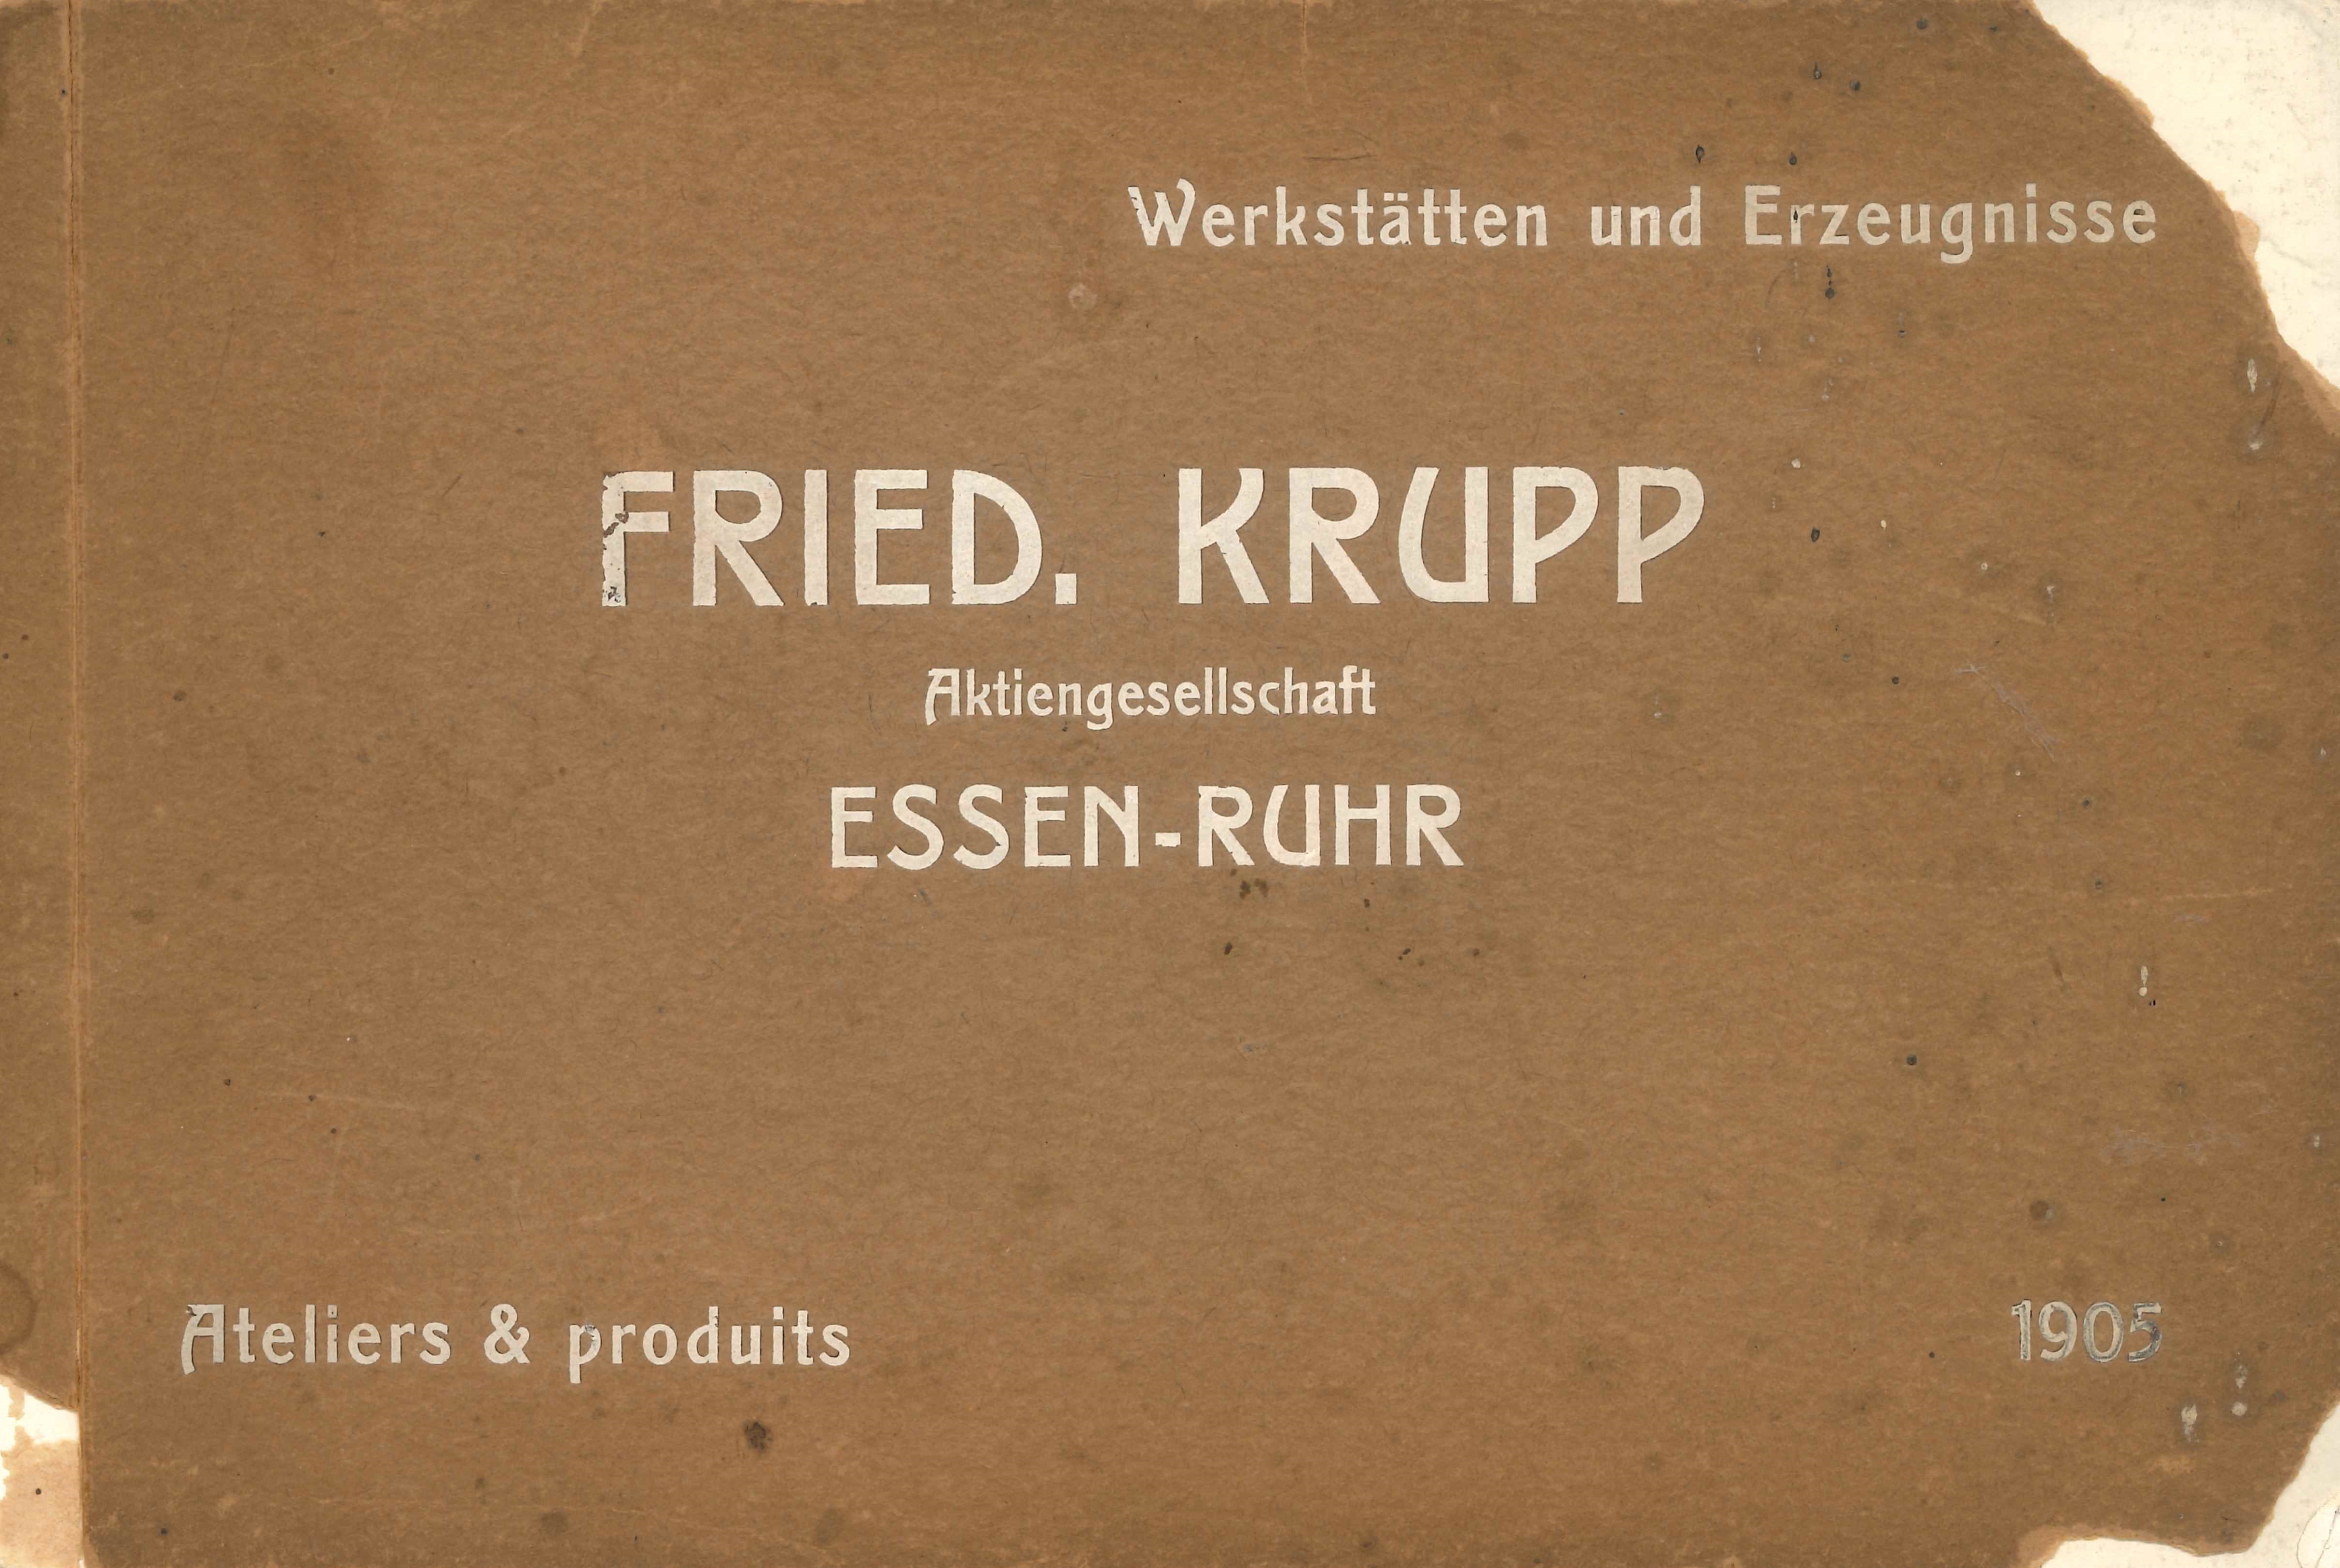 Buch "Werkstätten und Erzeugnisse" Fried. Krupp, 1905 (REM CC BY-NC-SA)